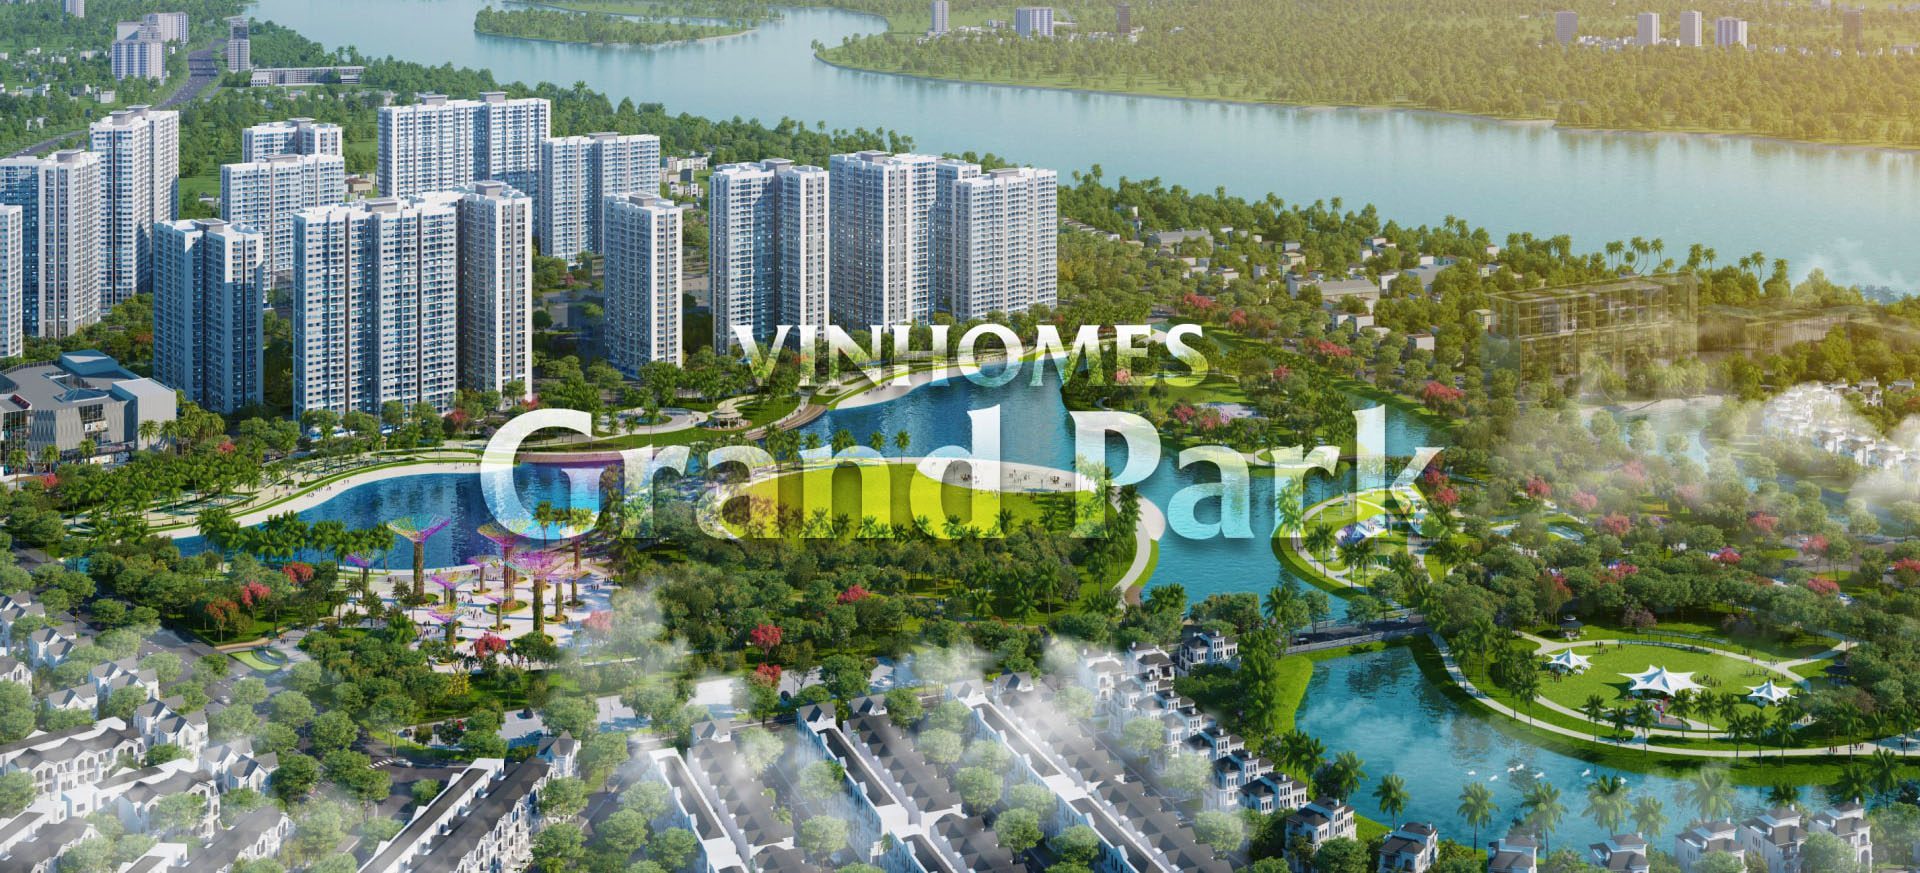 Vinhomes Grand Park Quận 9 – Thành phố công viên hiện đại bậc nhất Đông Sài Gòn